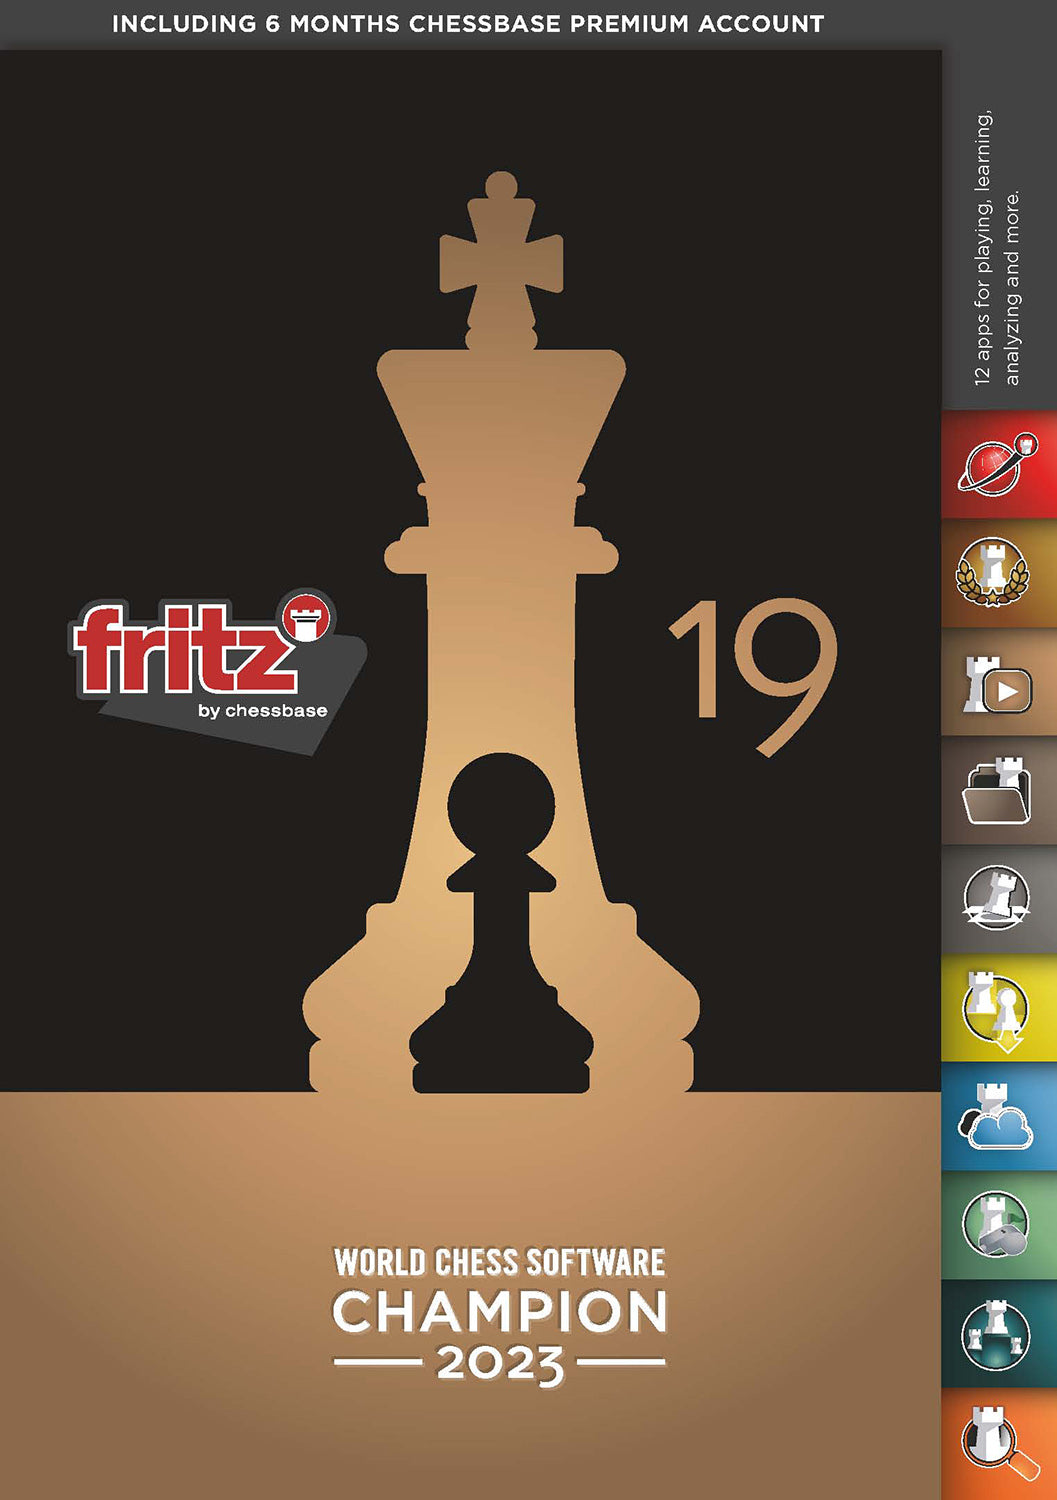 ChessBase Magazine 209